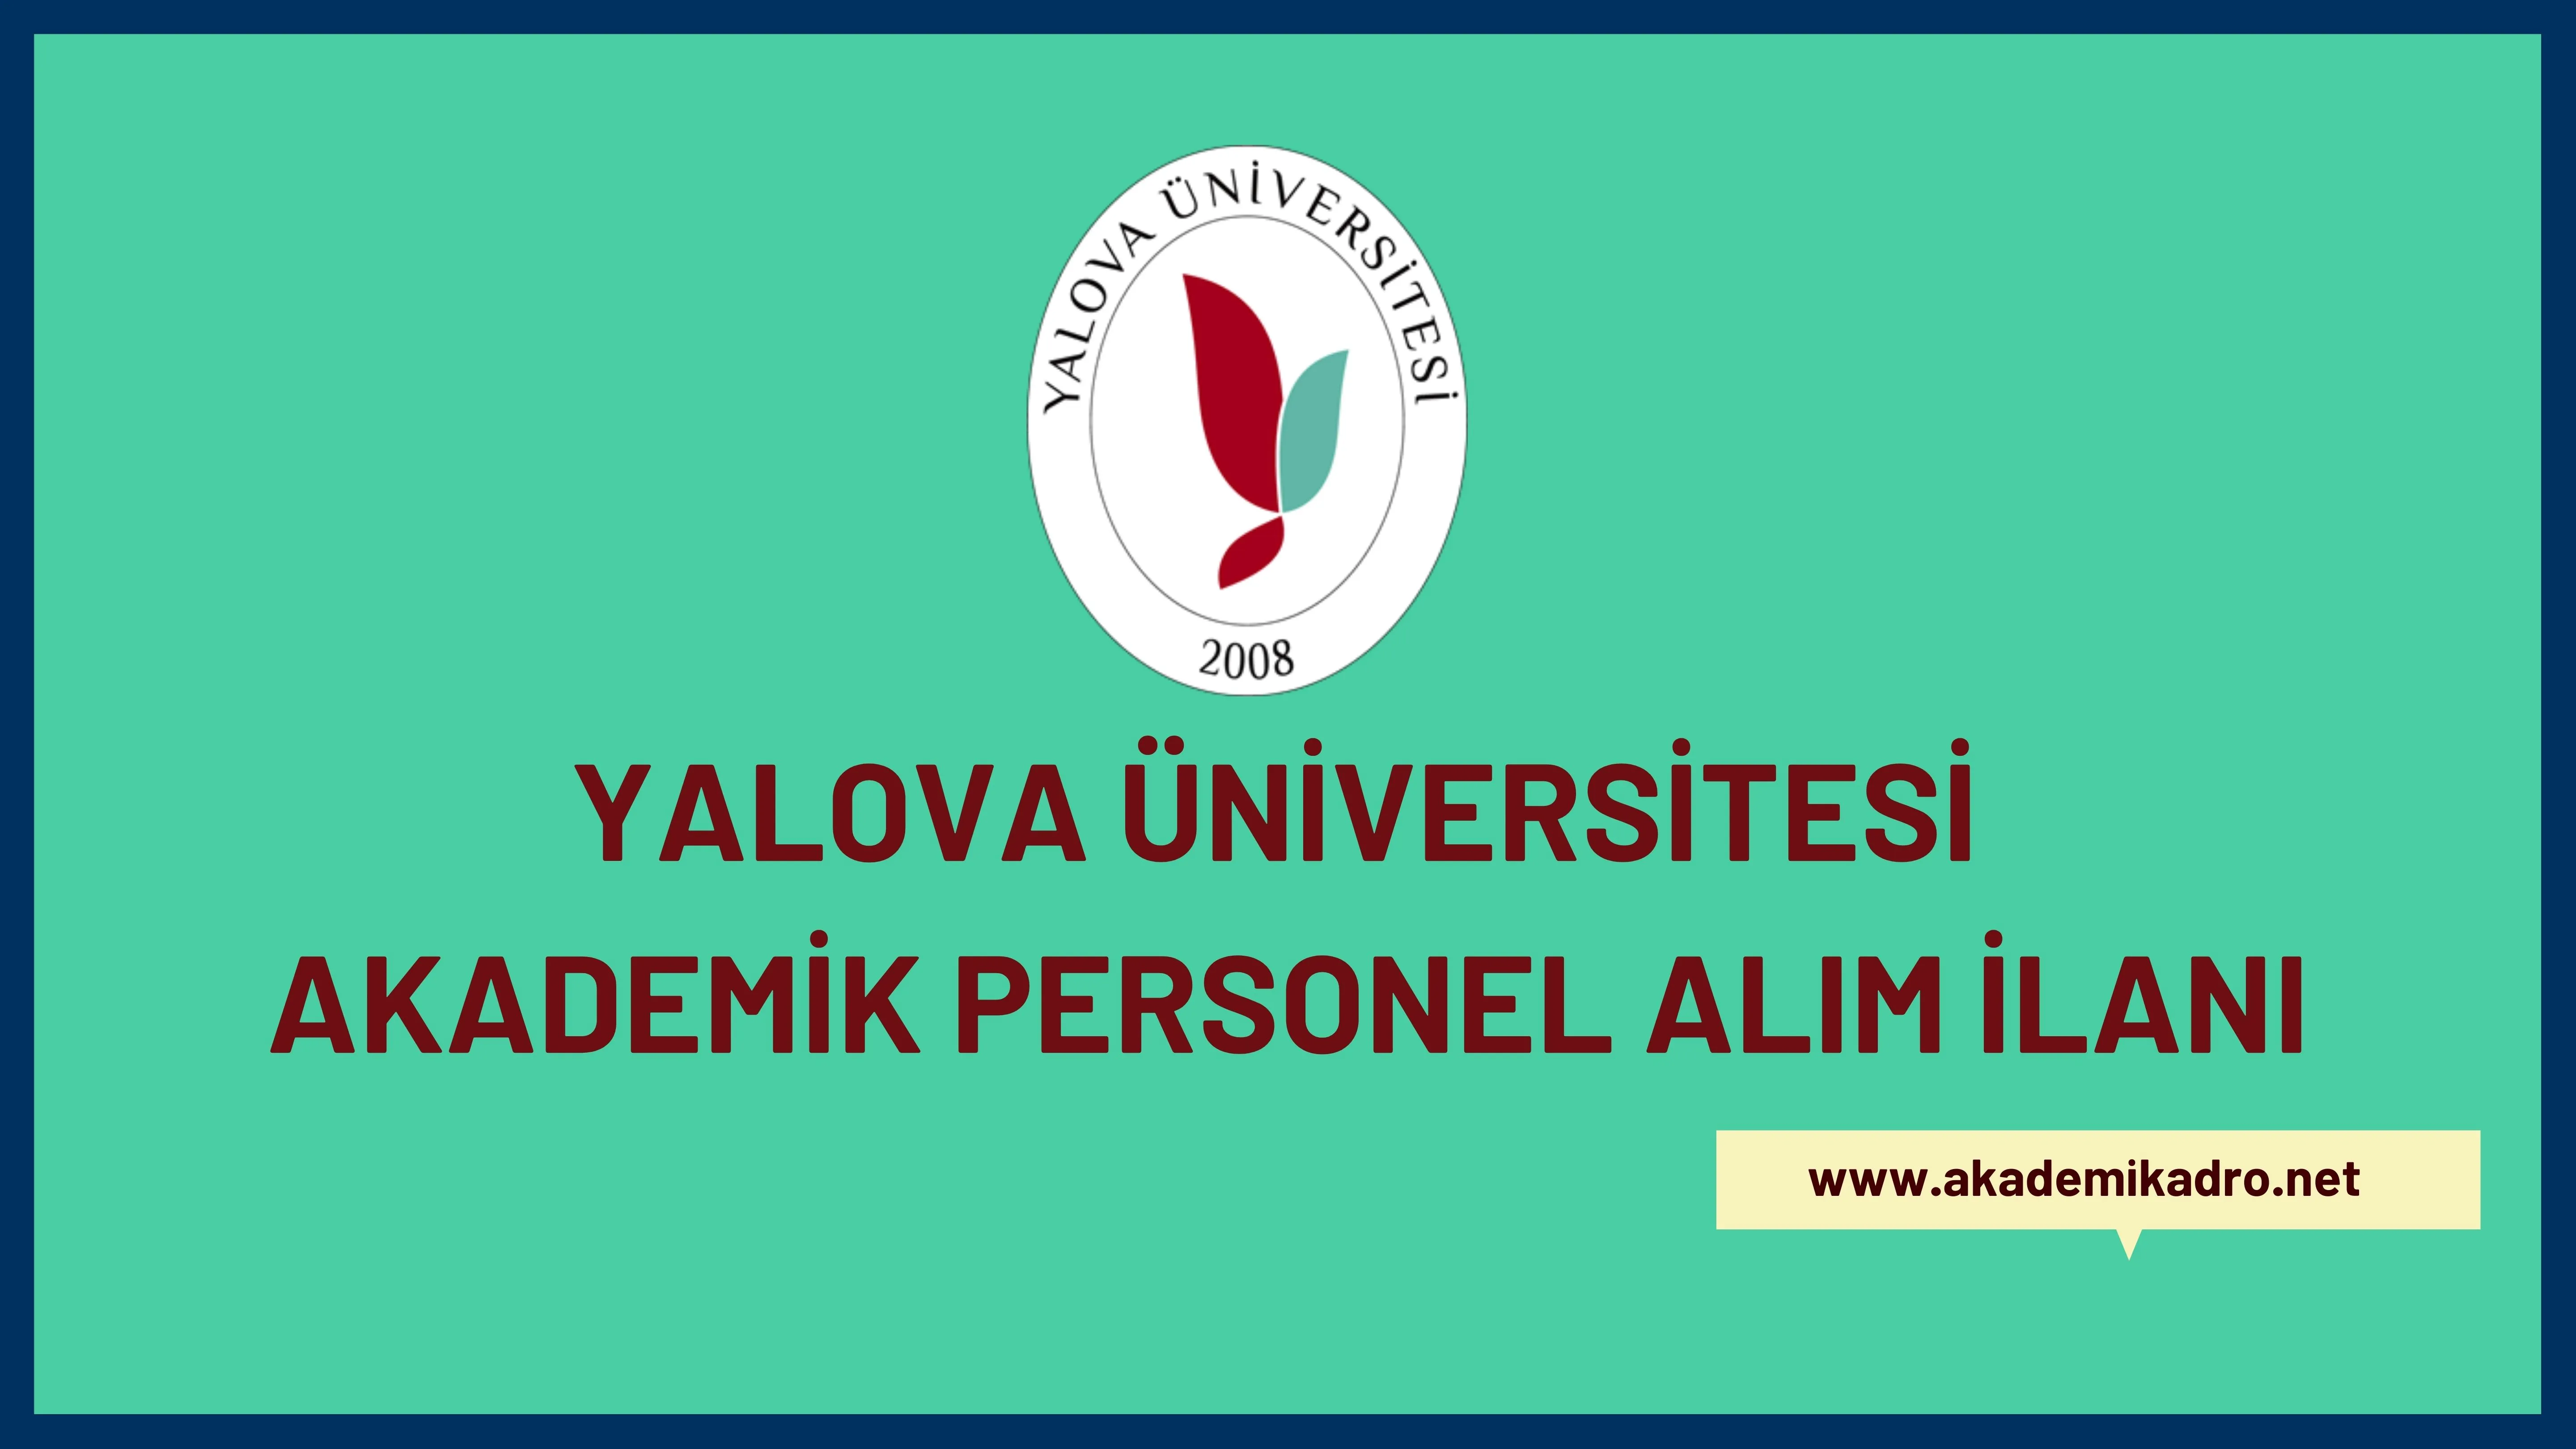 Yalova Üniversitesi birçok alandan 17 akademik personel alacak.